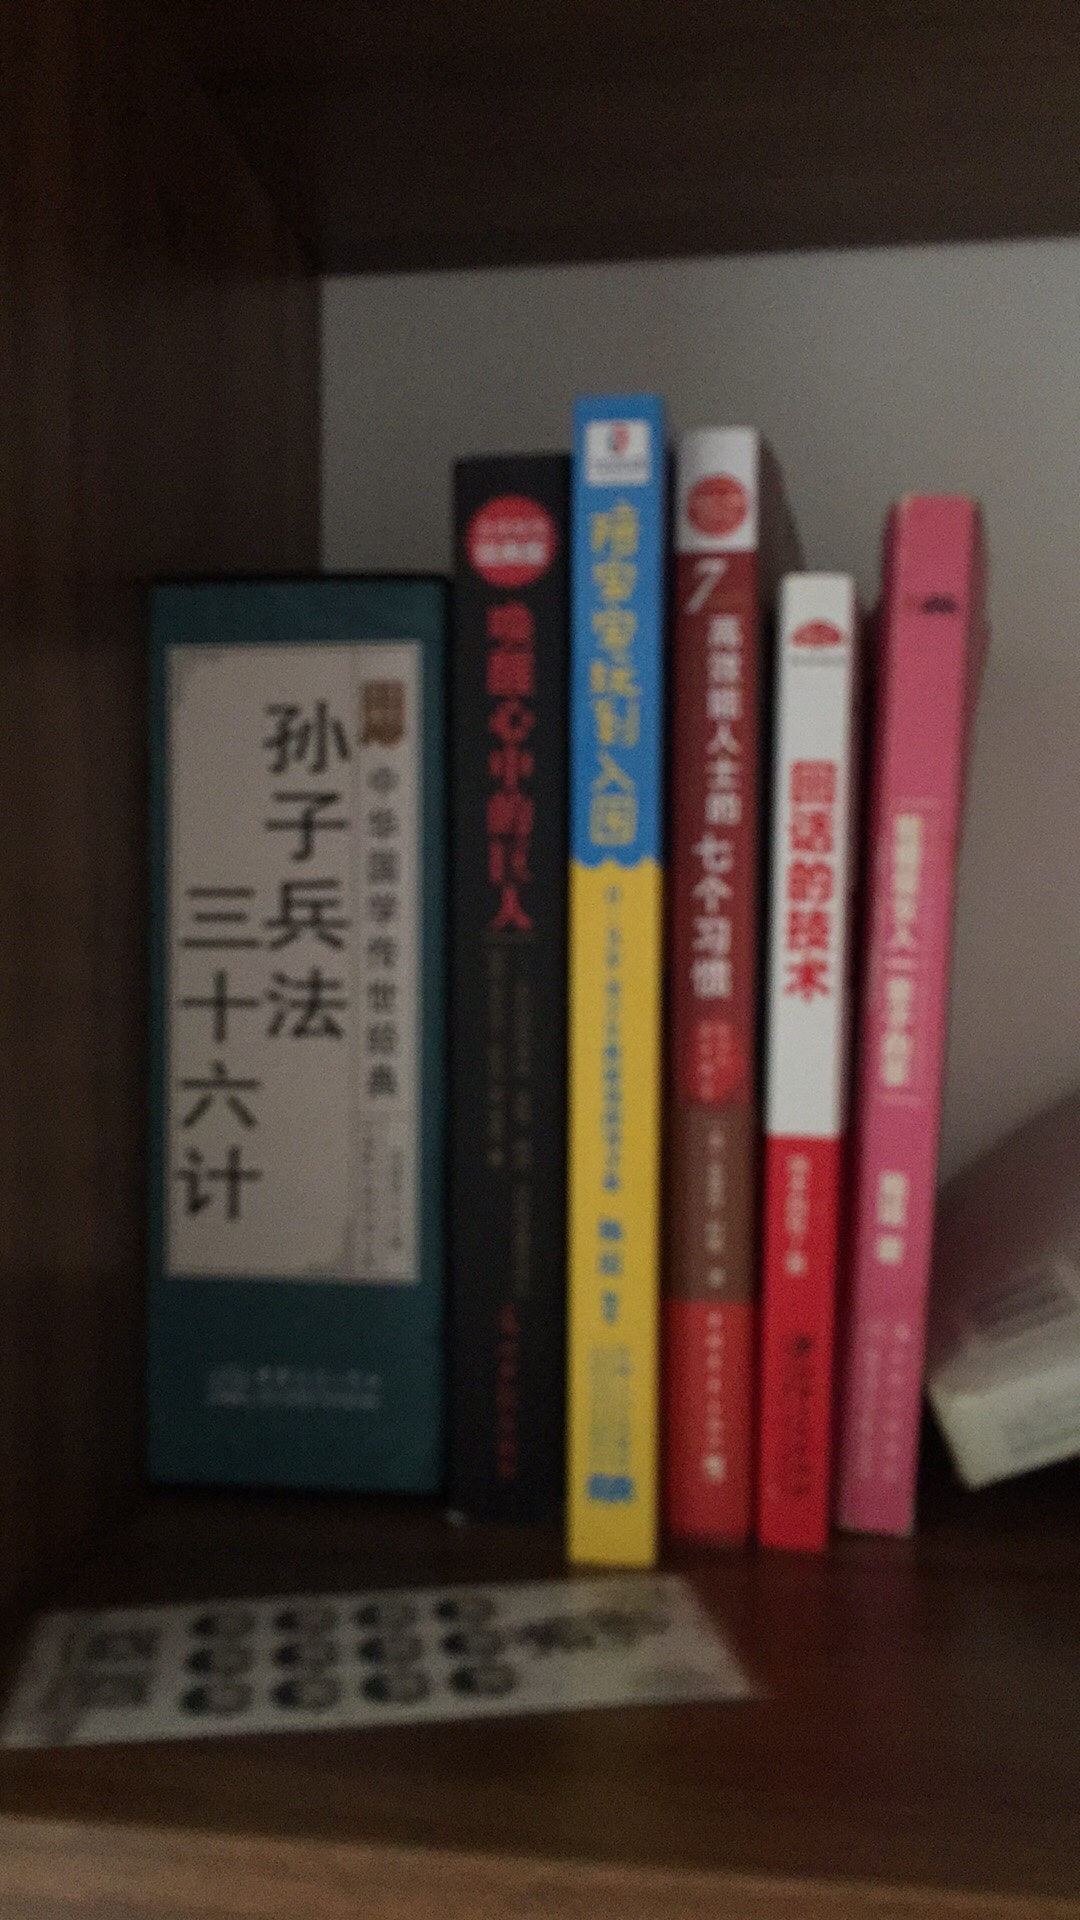 书很好，中国经典的书籍，推荐大家买来看一看